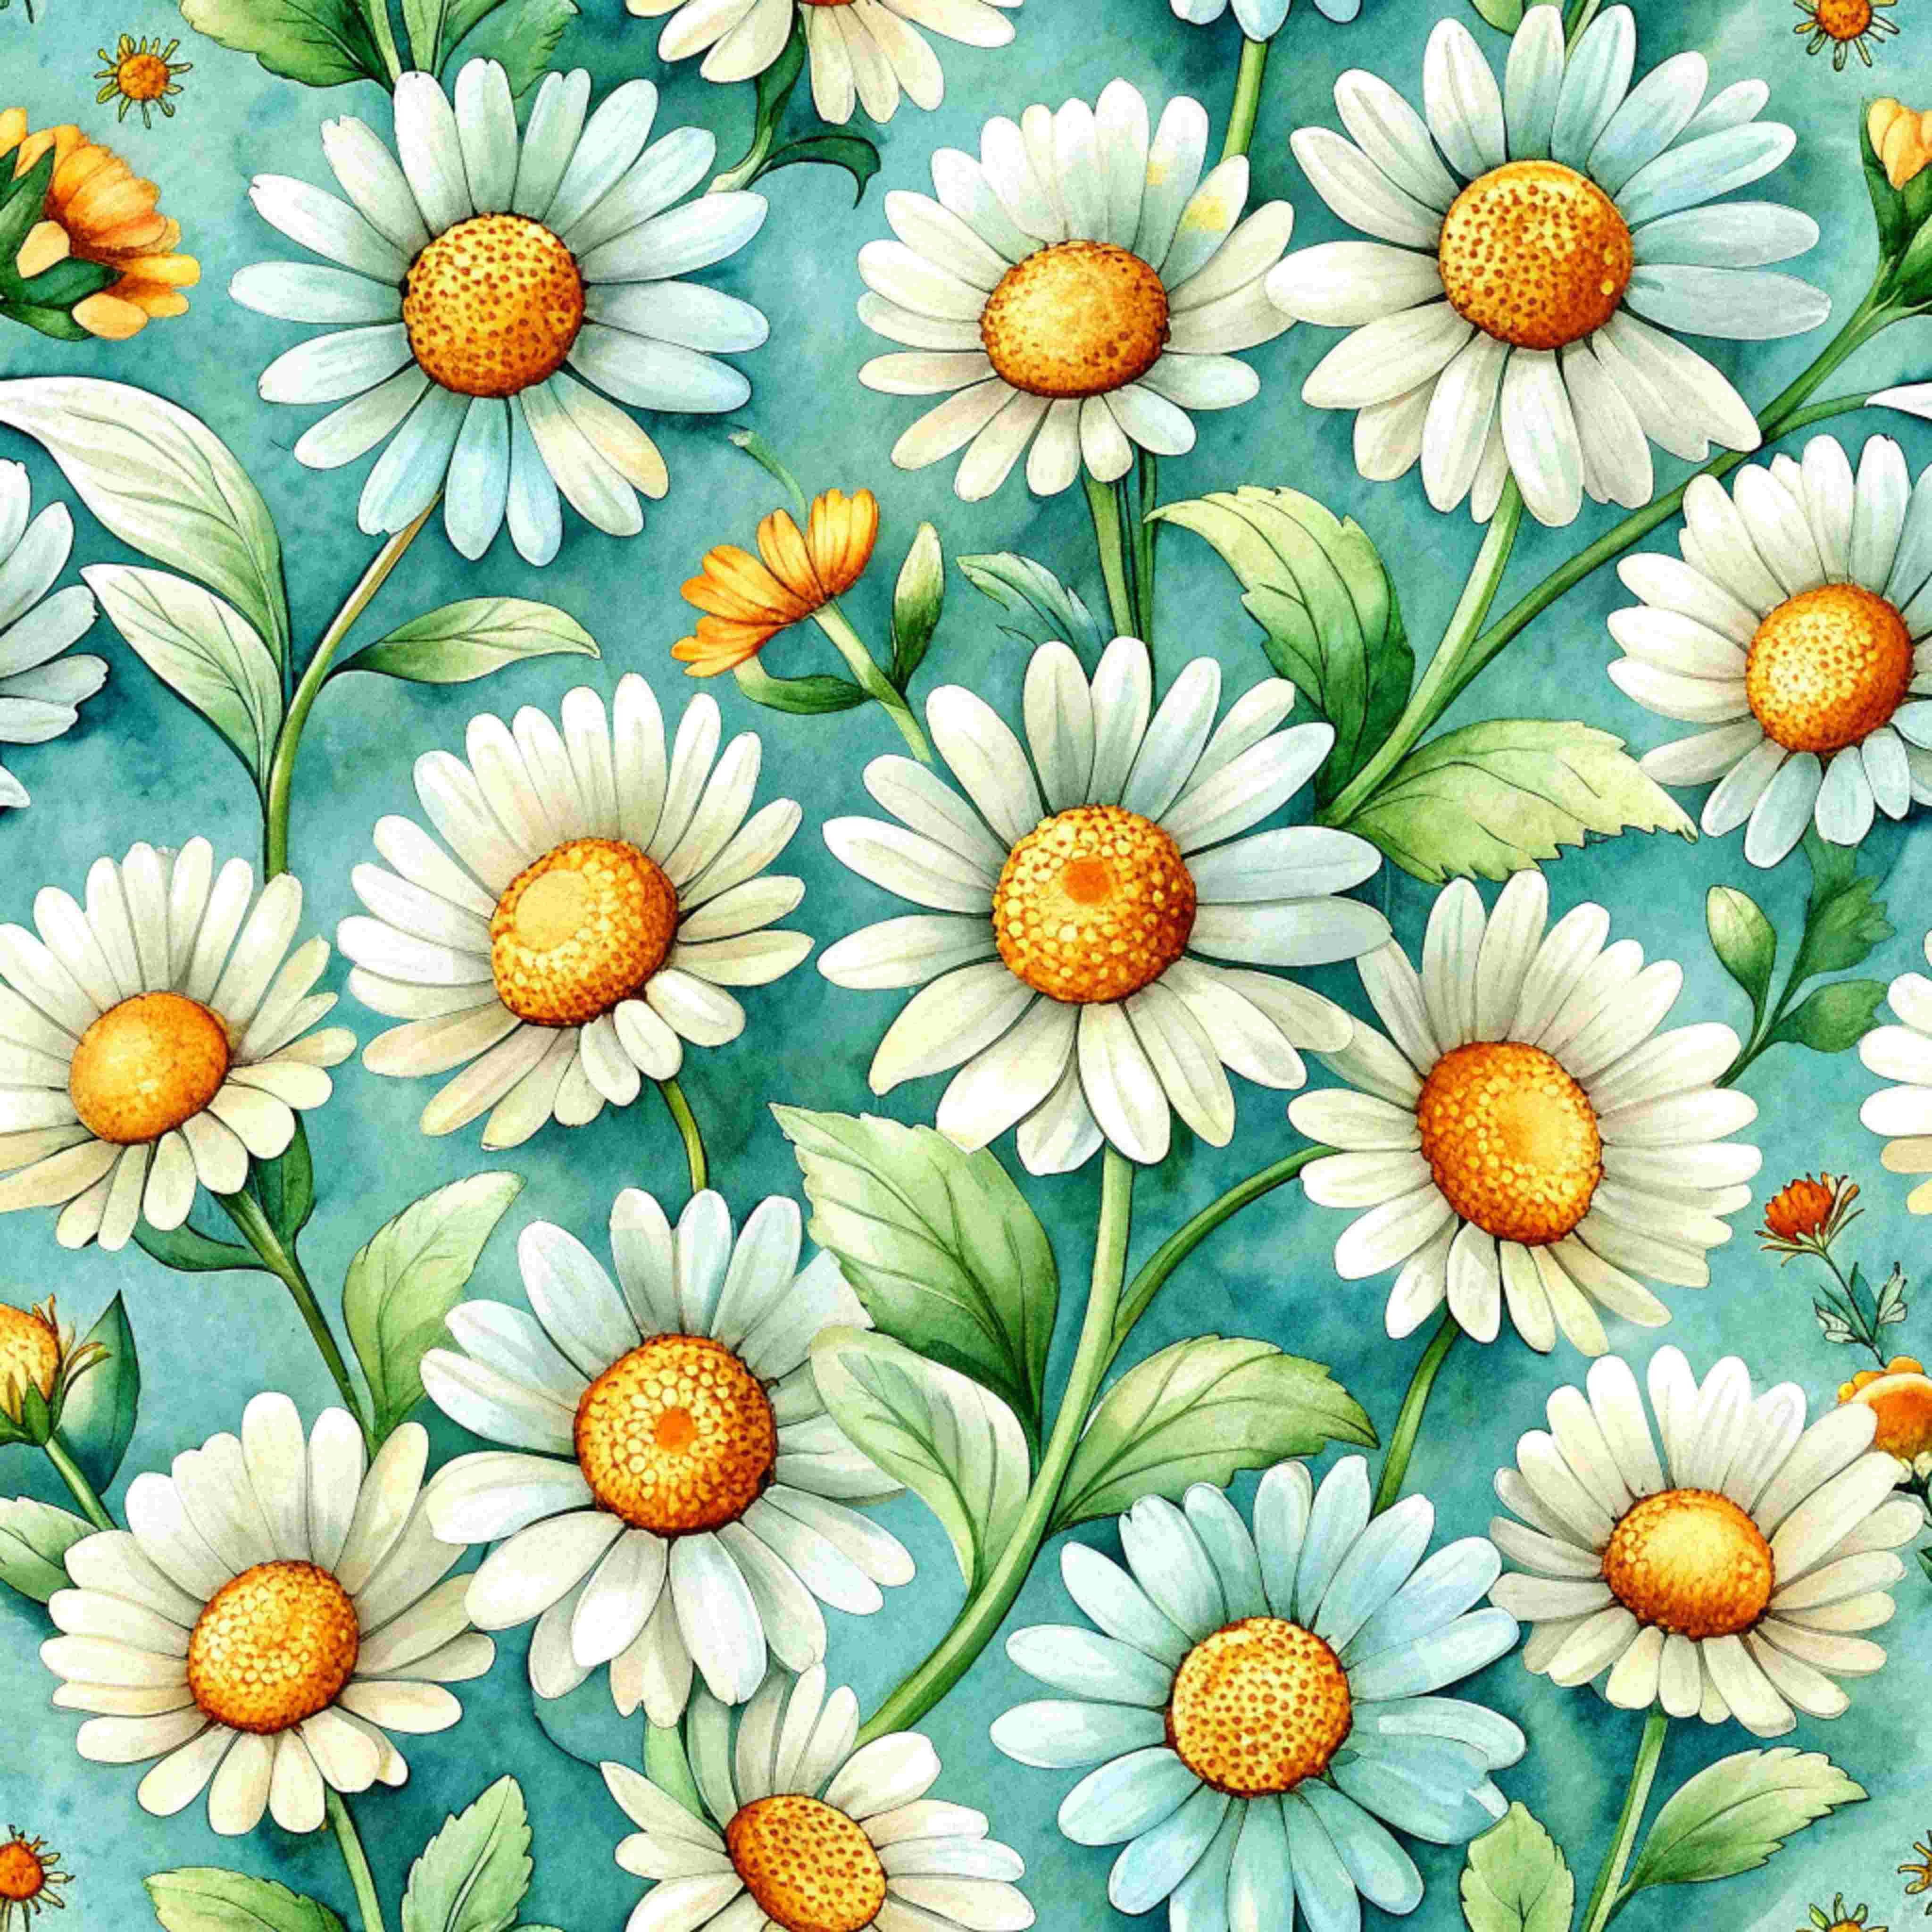 daisy digital paper pattern 2 result 27